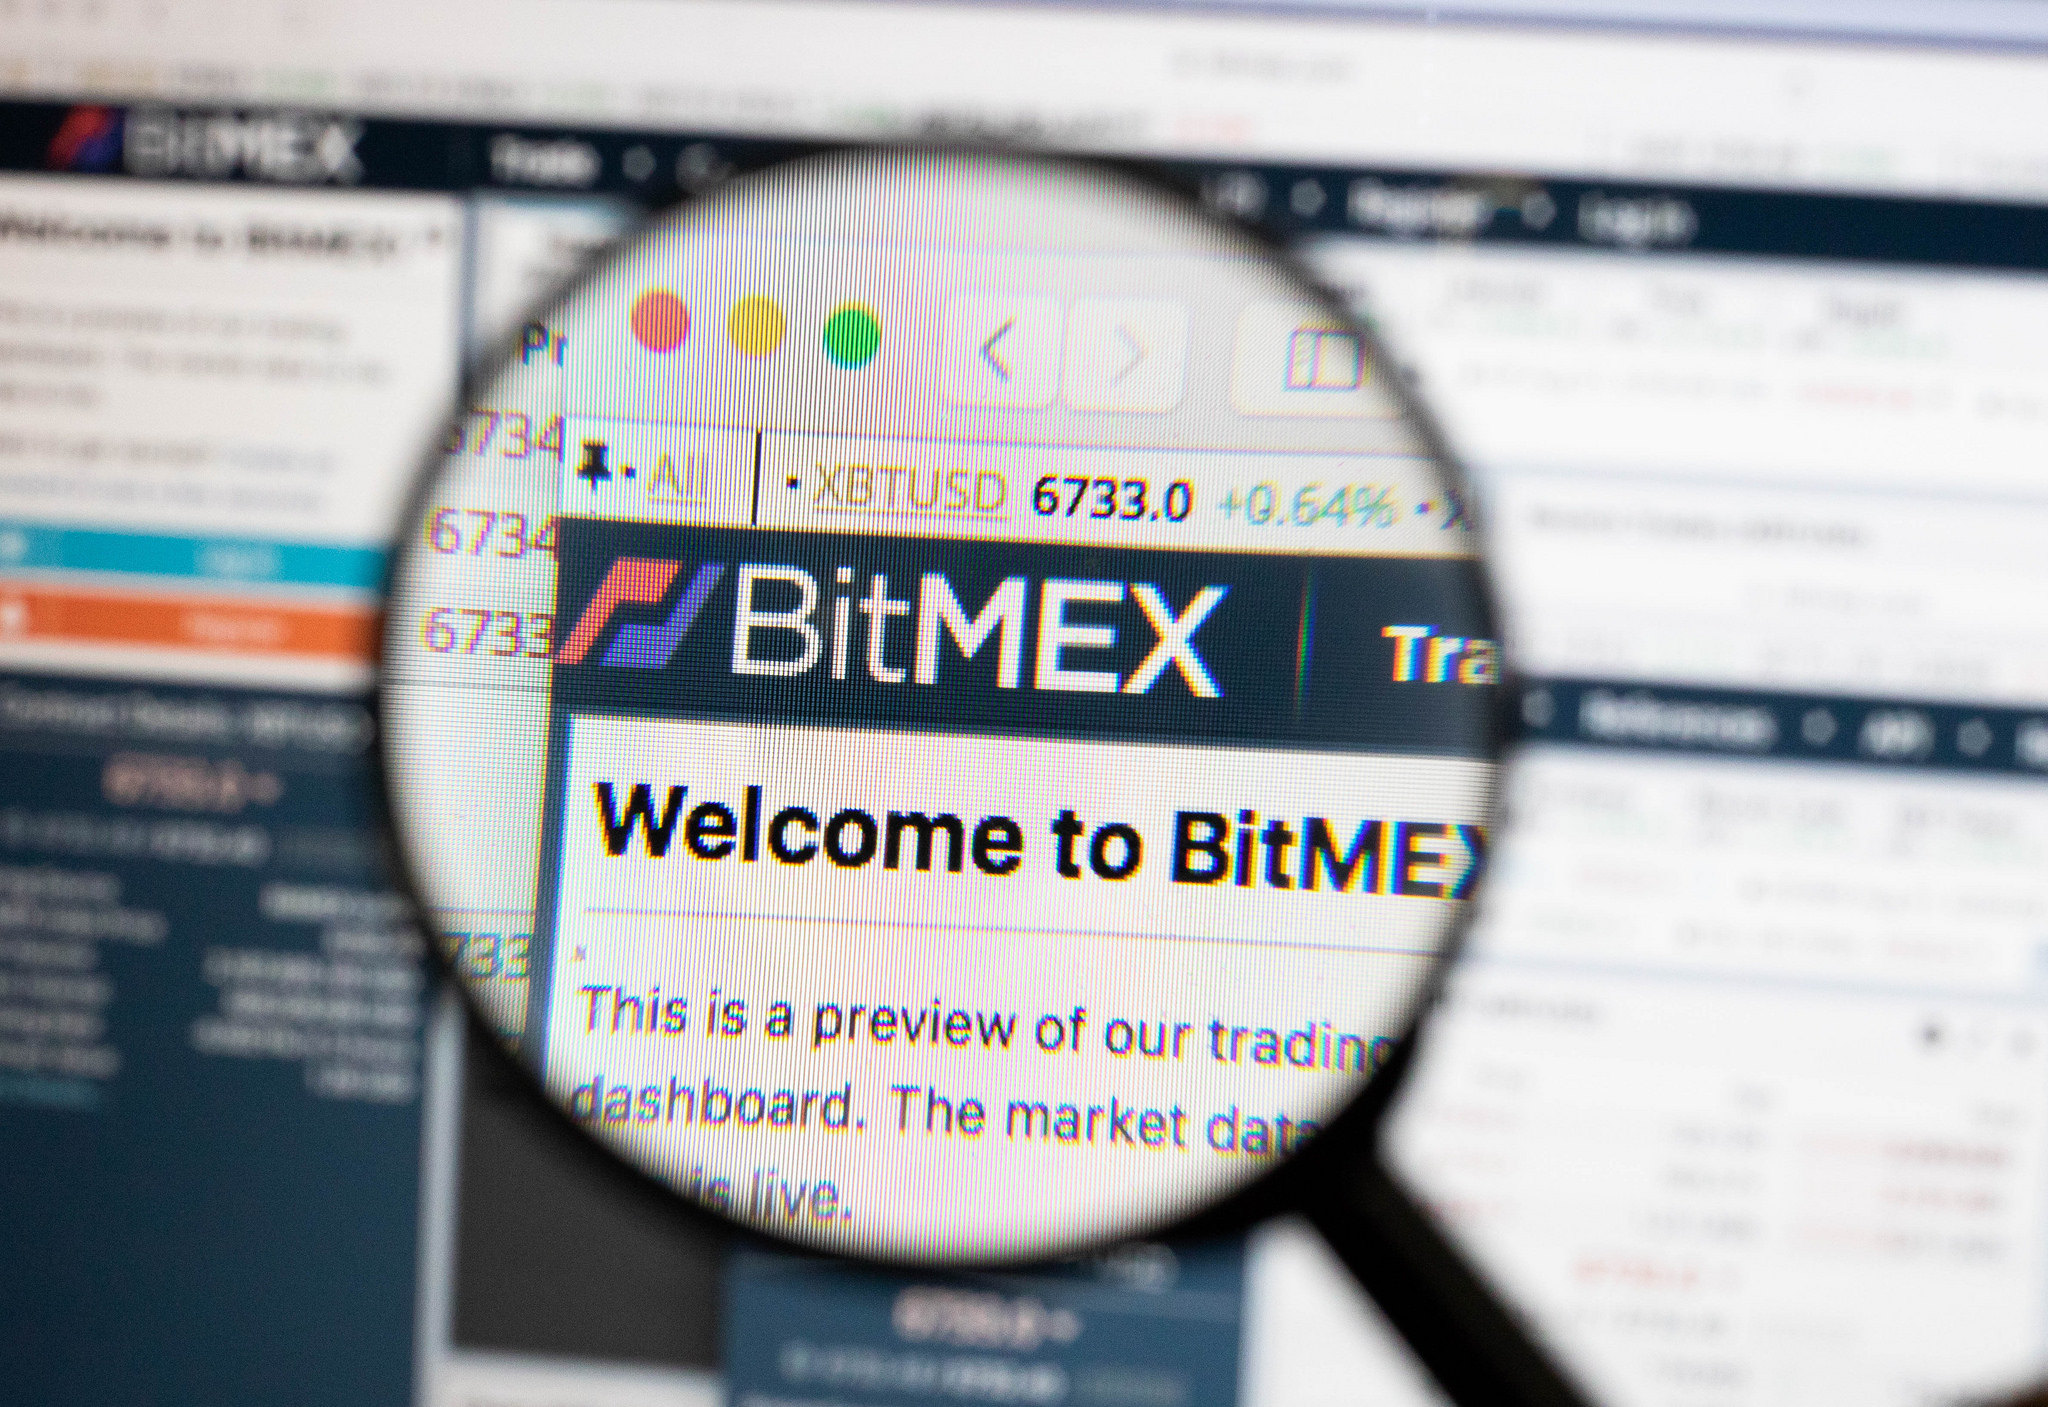 BitMEX cryptocurrency exchange.